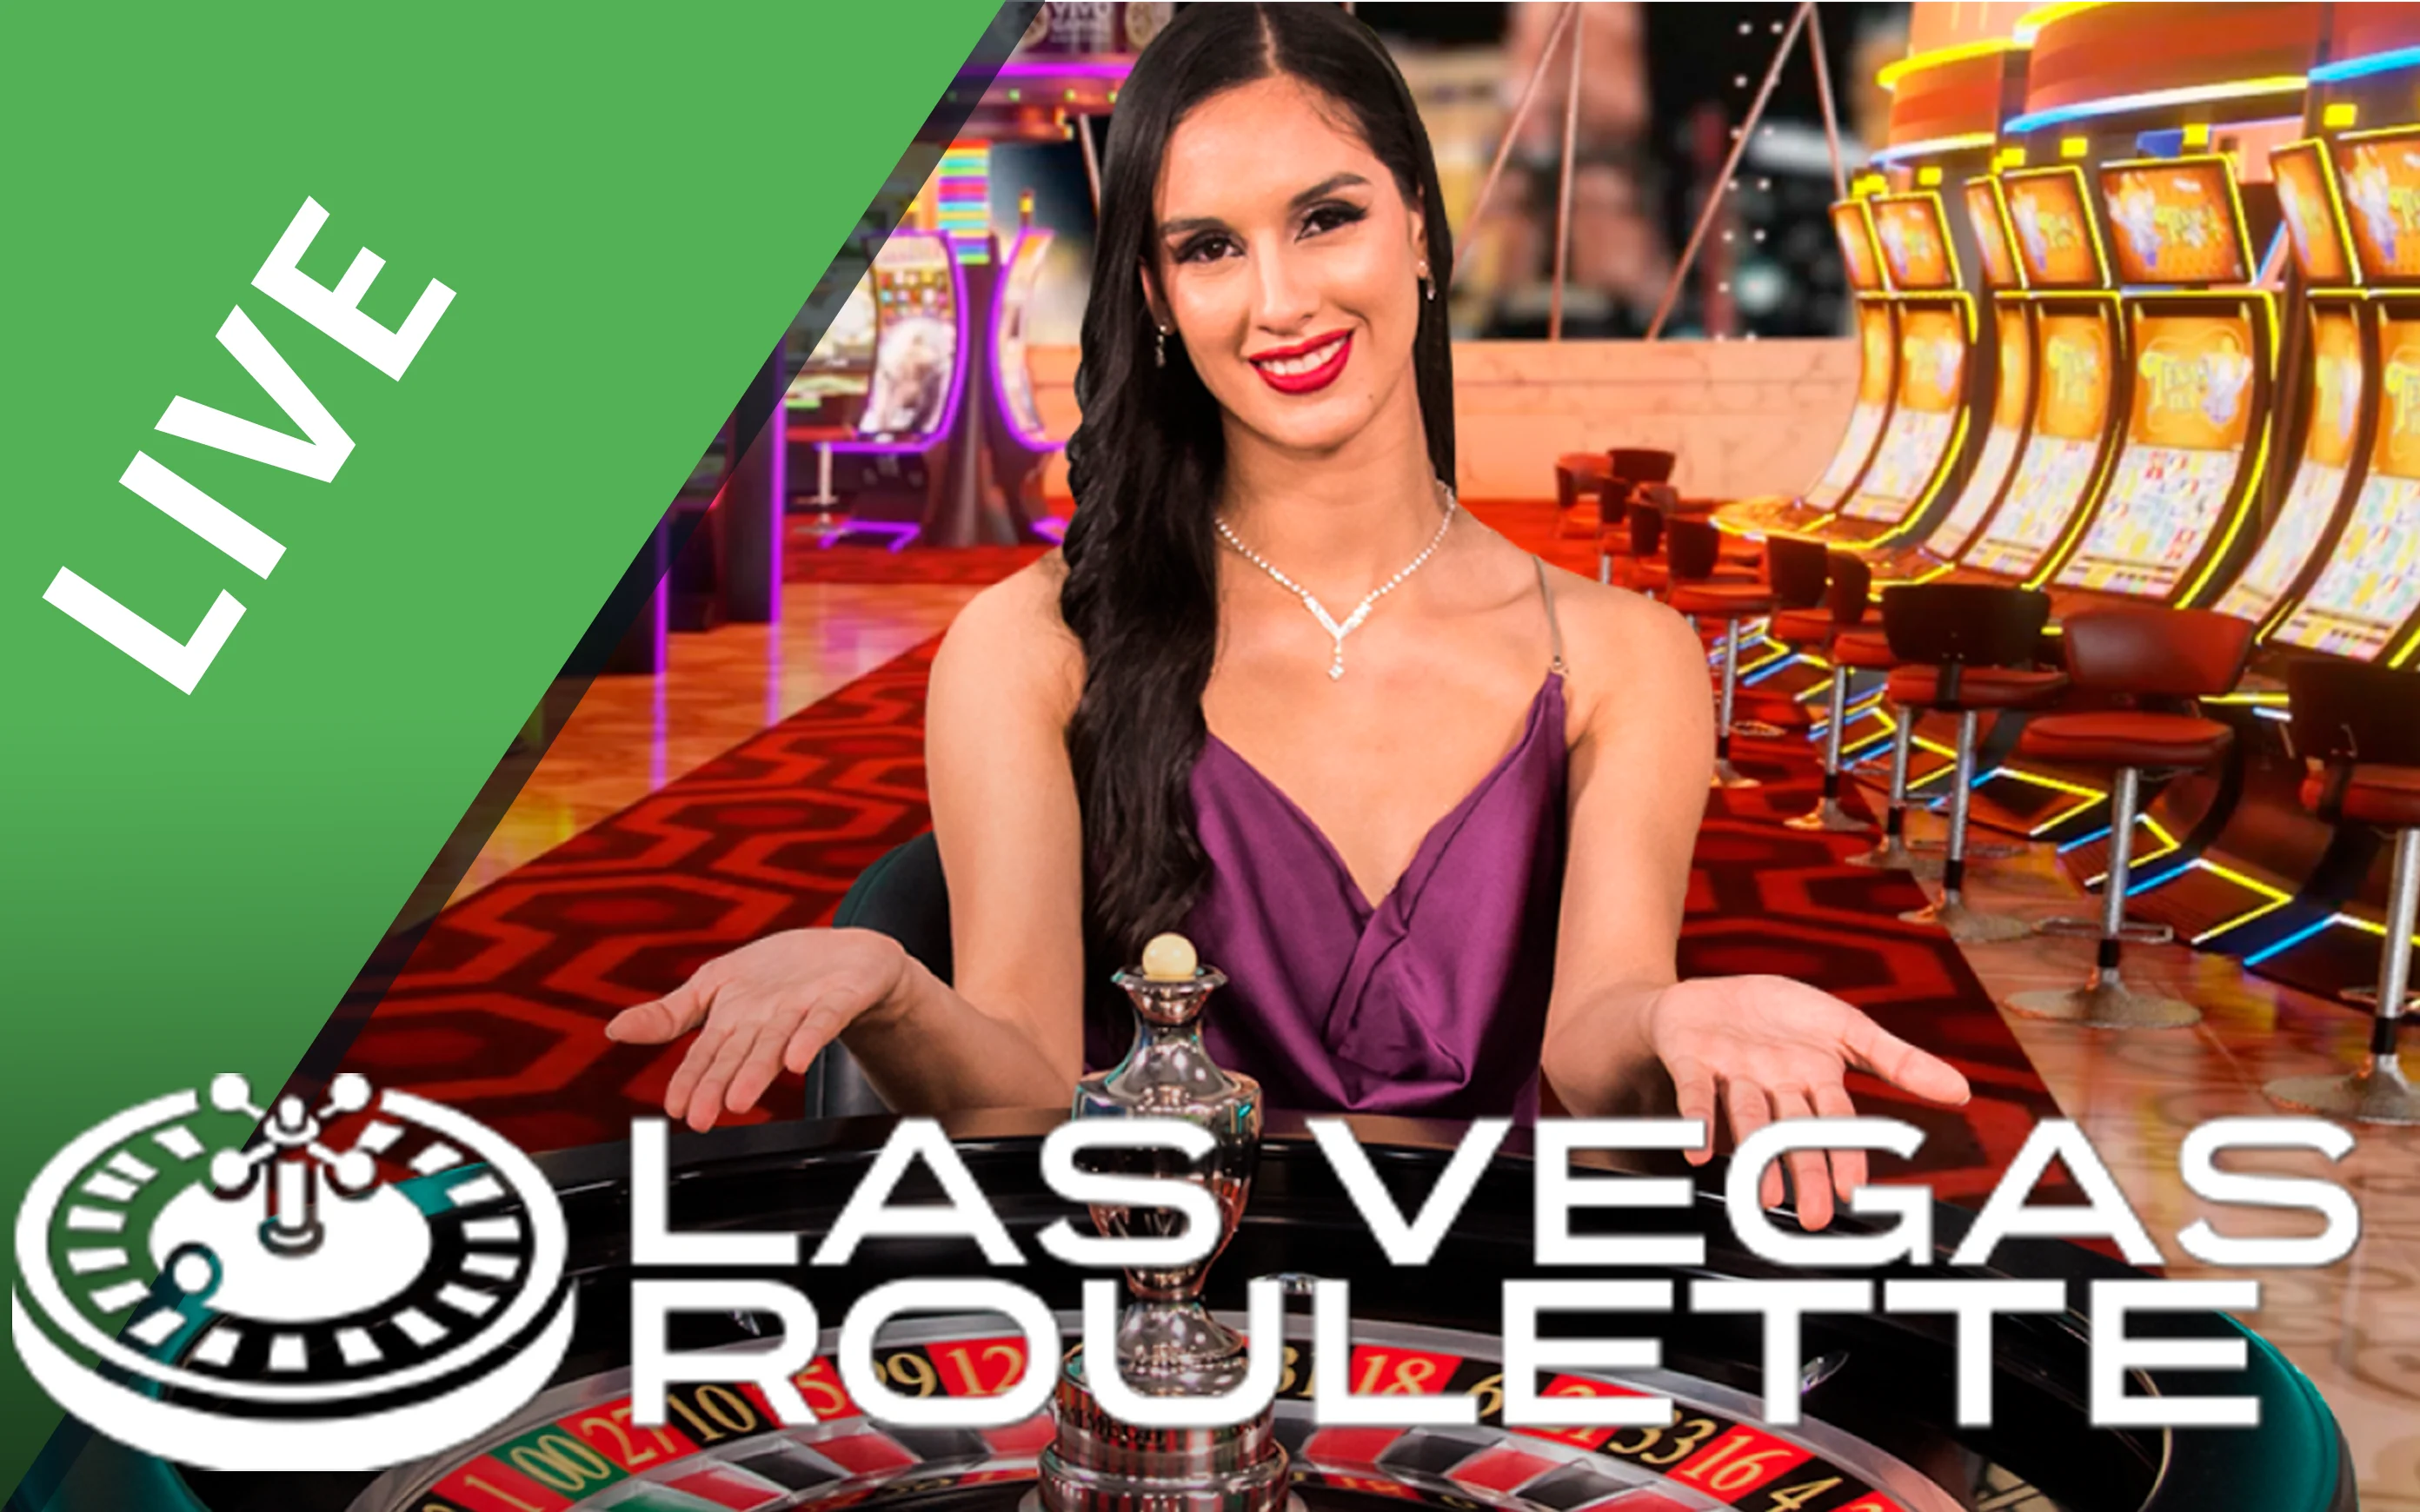 Gioca a Las Vegas Roulette sul casino online Starcasino.be